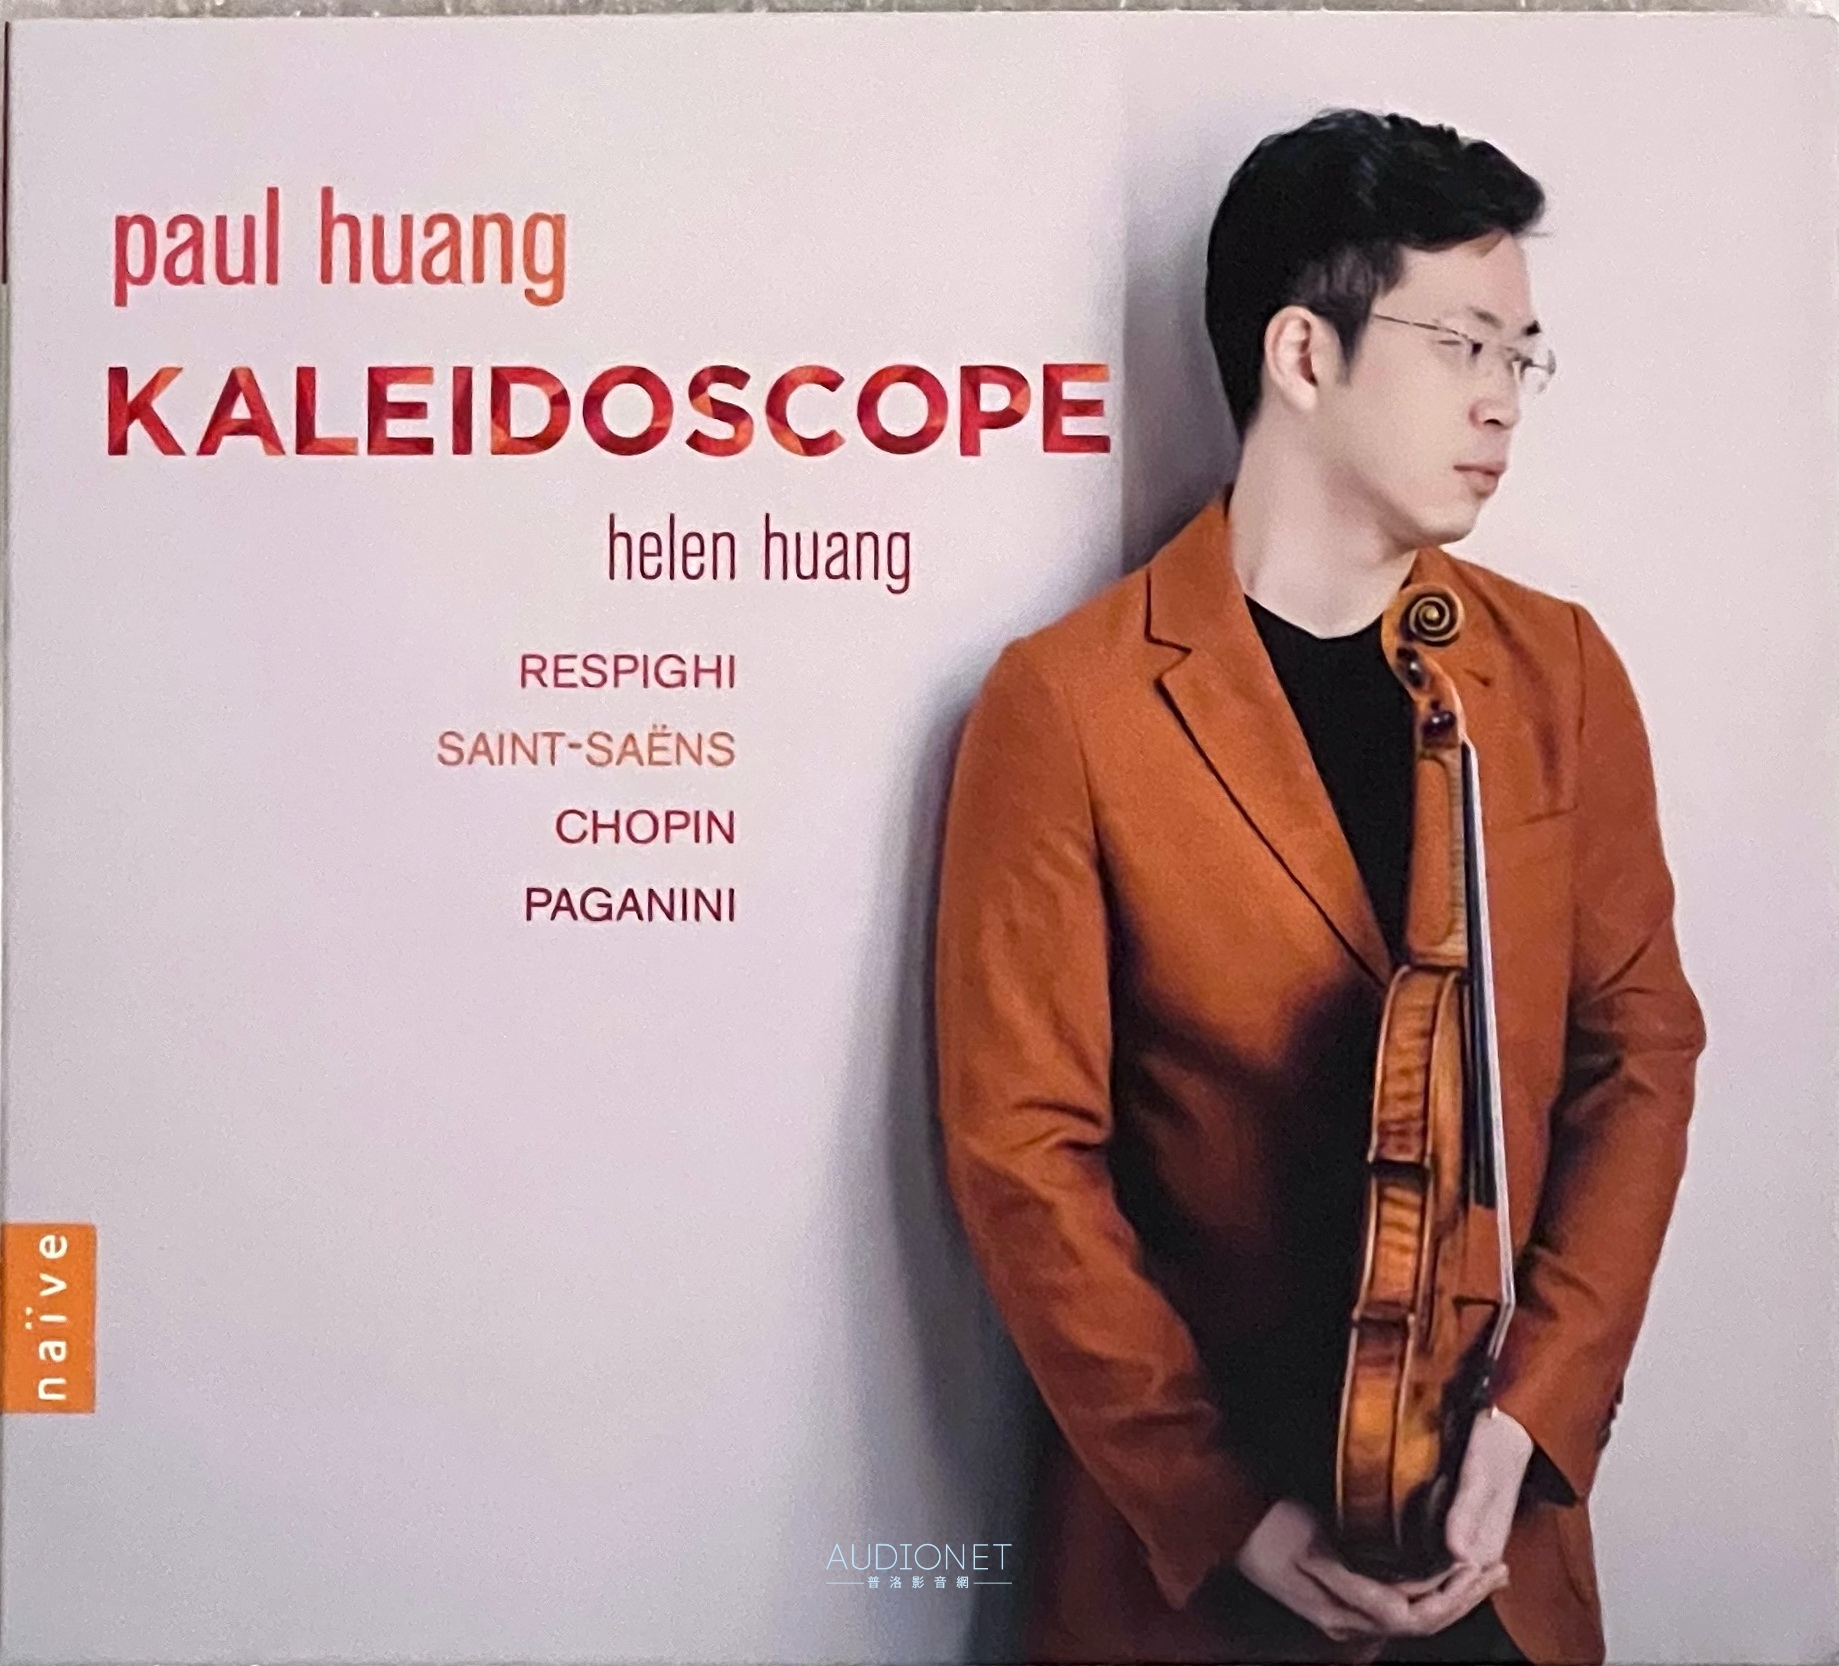 Paul Huang Kaleidoscope 琴炫彩影